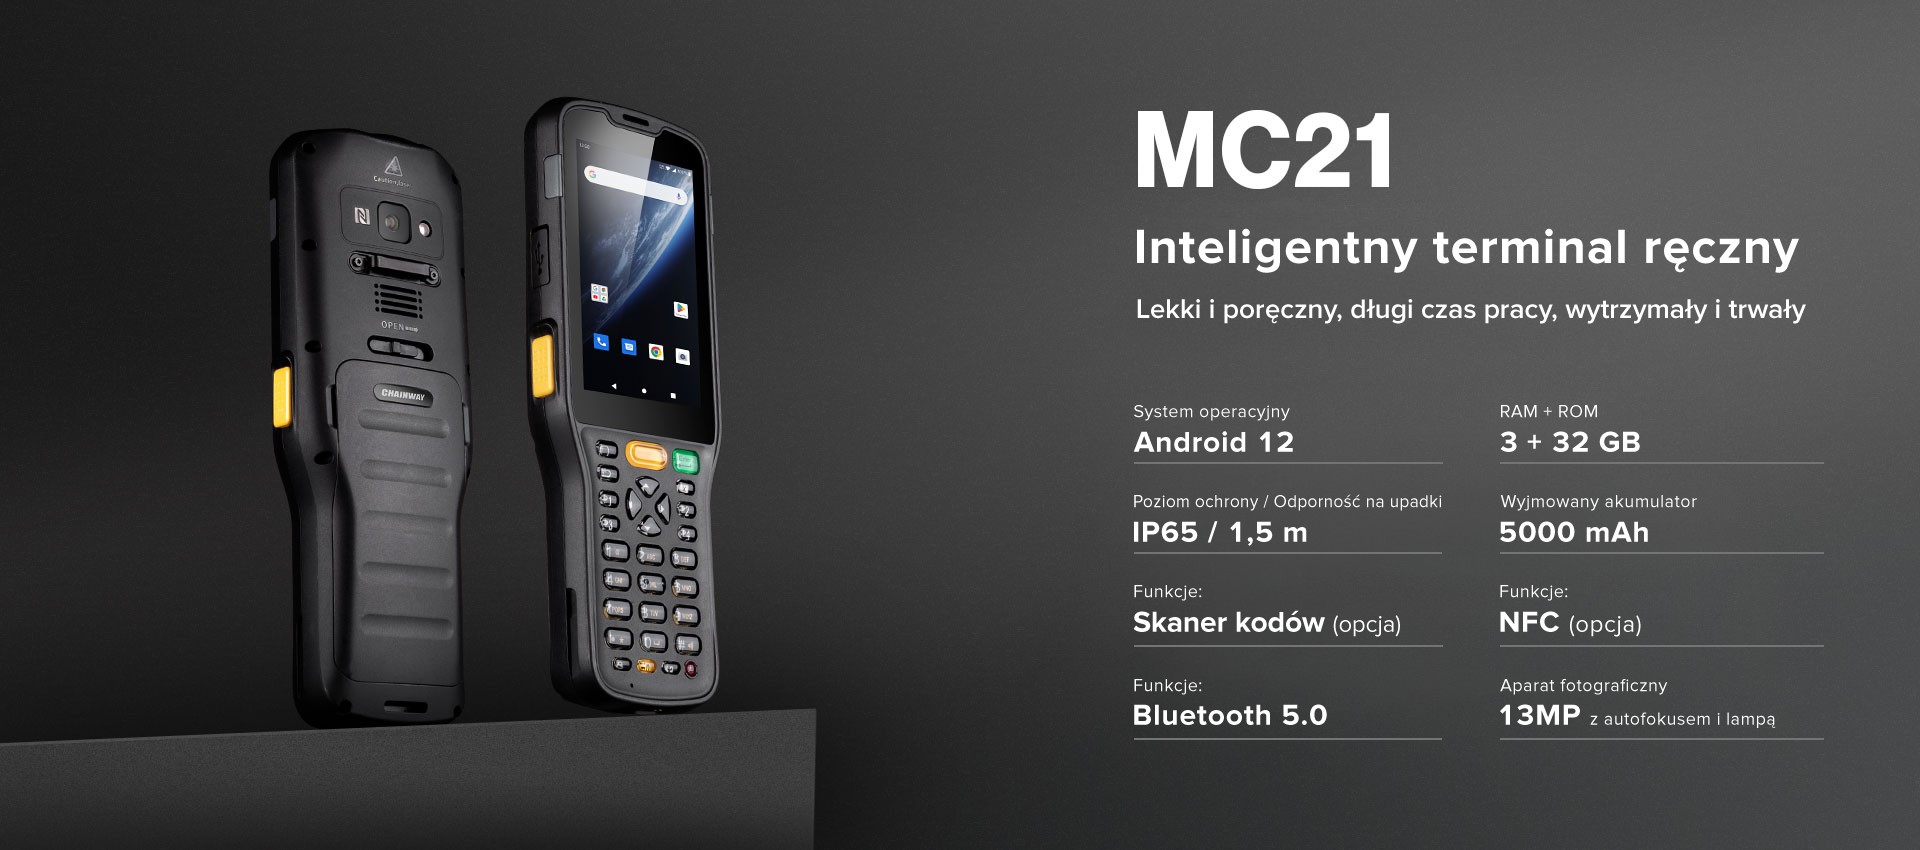 Chainway MC21 Komputer mobilny Android 12 Łatwiejszy w użyciu, bardziej opłacalny, solidny i wytrzymały